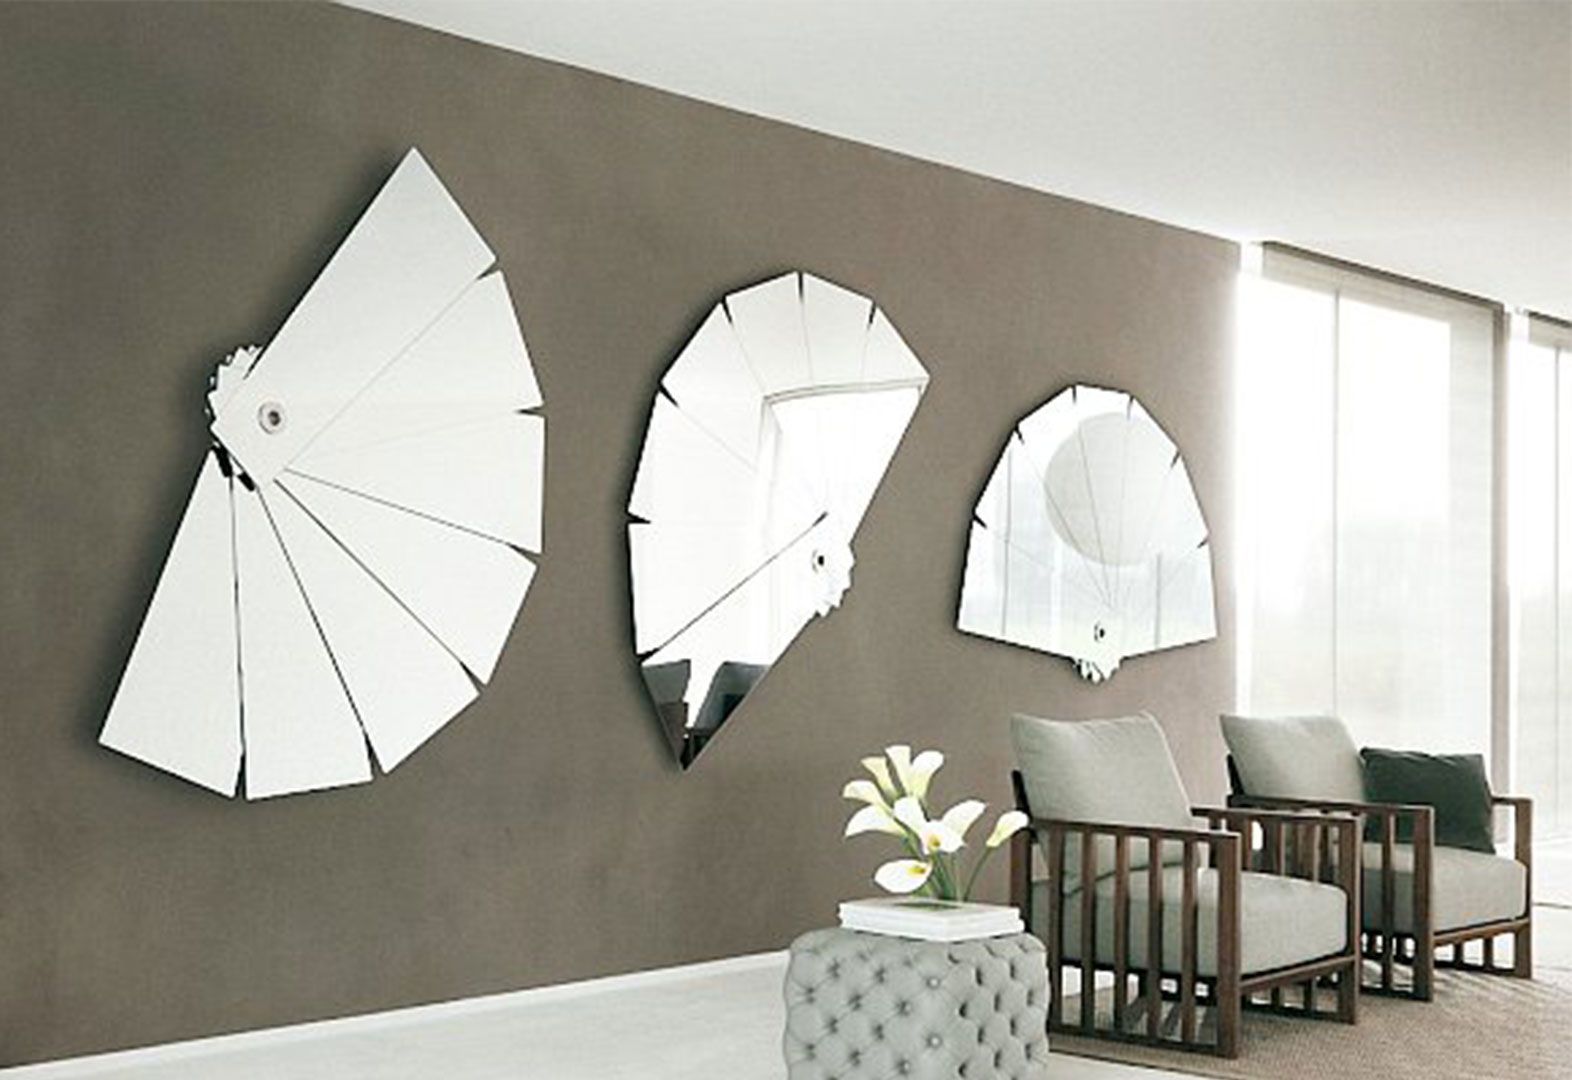 Creative Interior Home Decor Mirrors